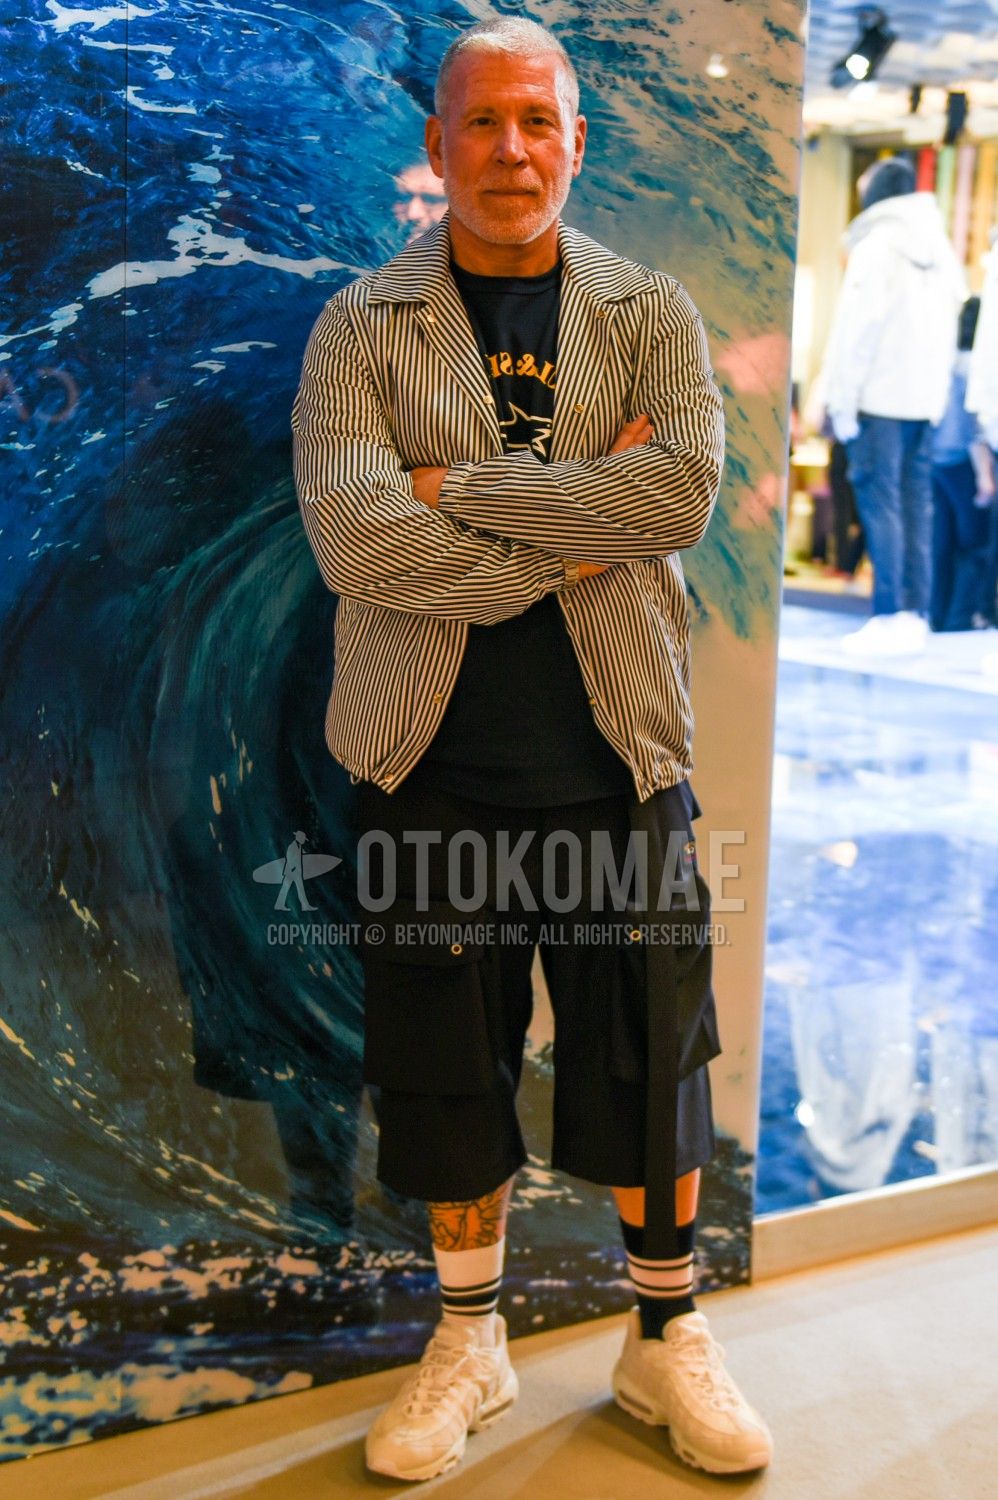 エアマックス コーデ特集 ナイキの人気スニーカーを使ったメンズ着こなしを紹介 メンズファッションメディア Faoswalimfaoswalim 男前研究所